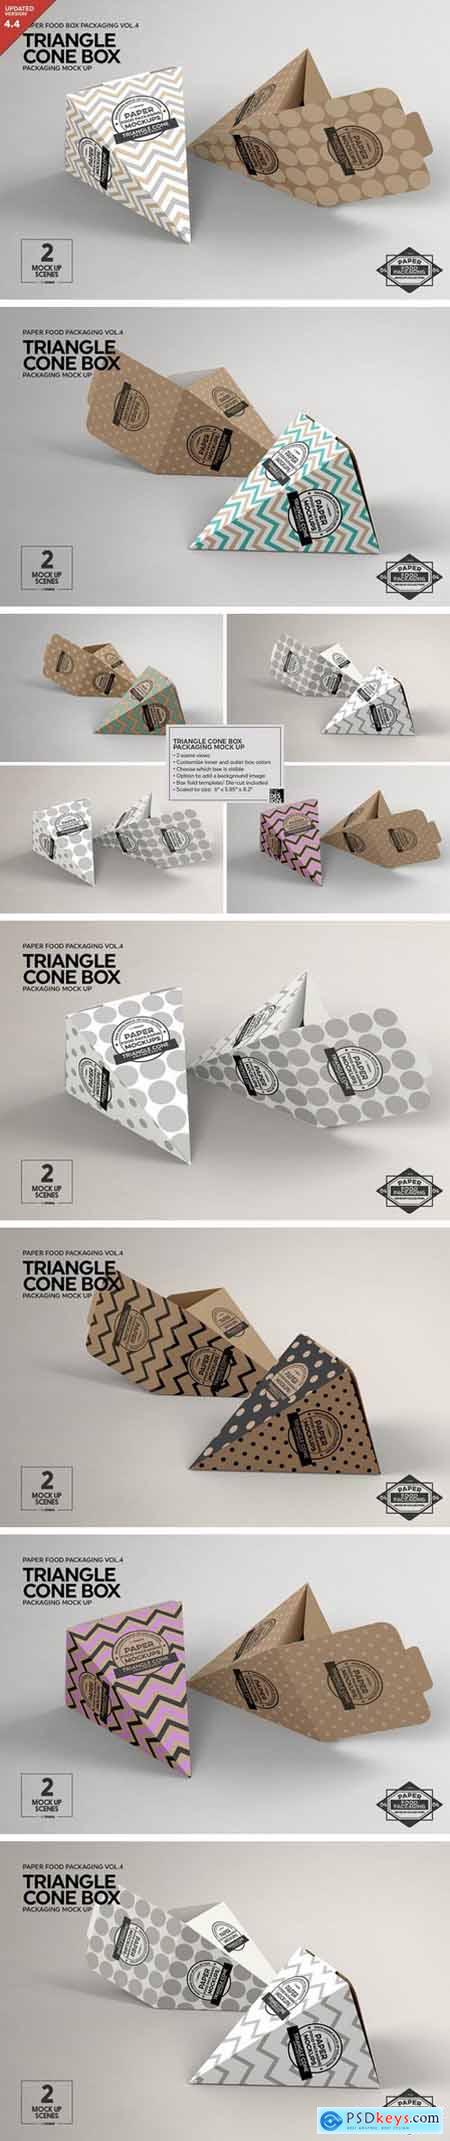 Triangle Cone Box Mockup